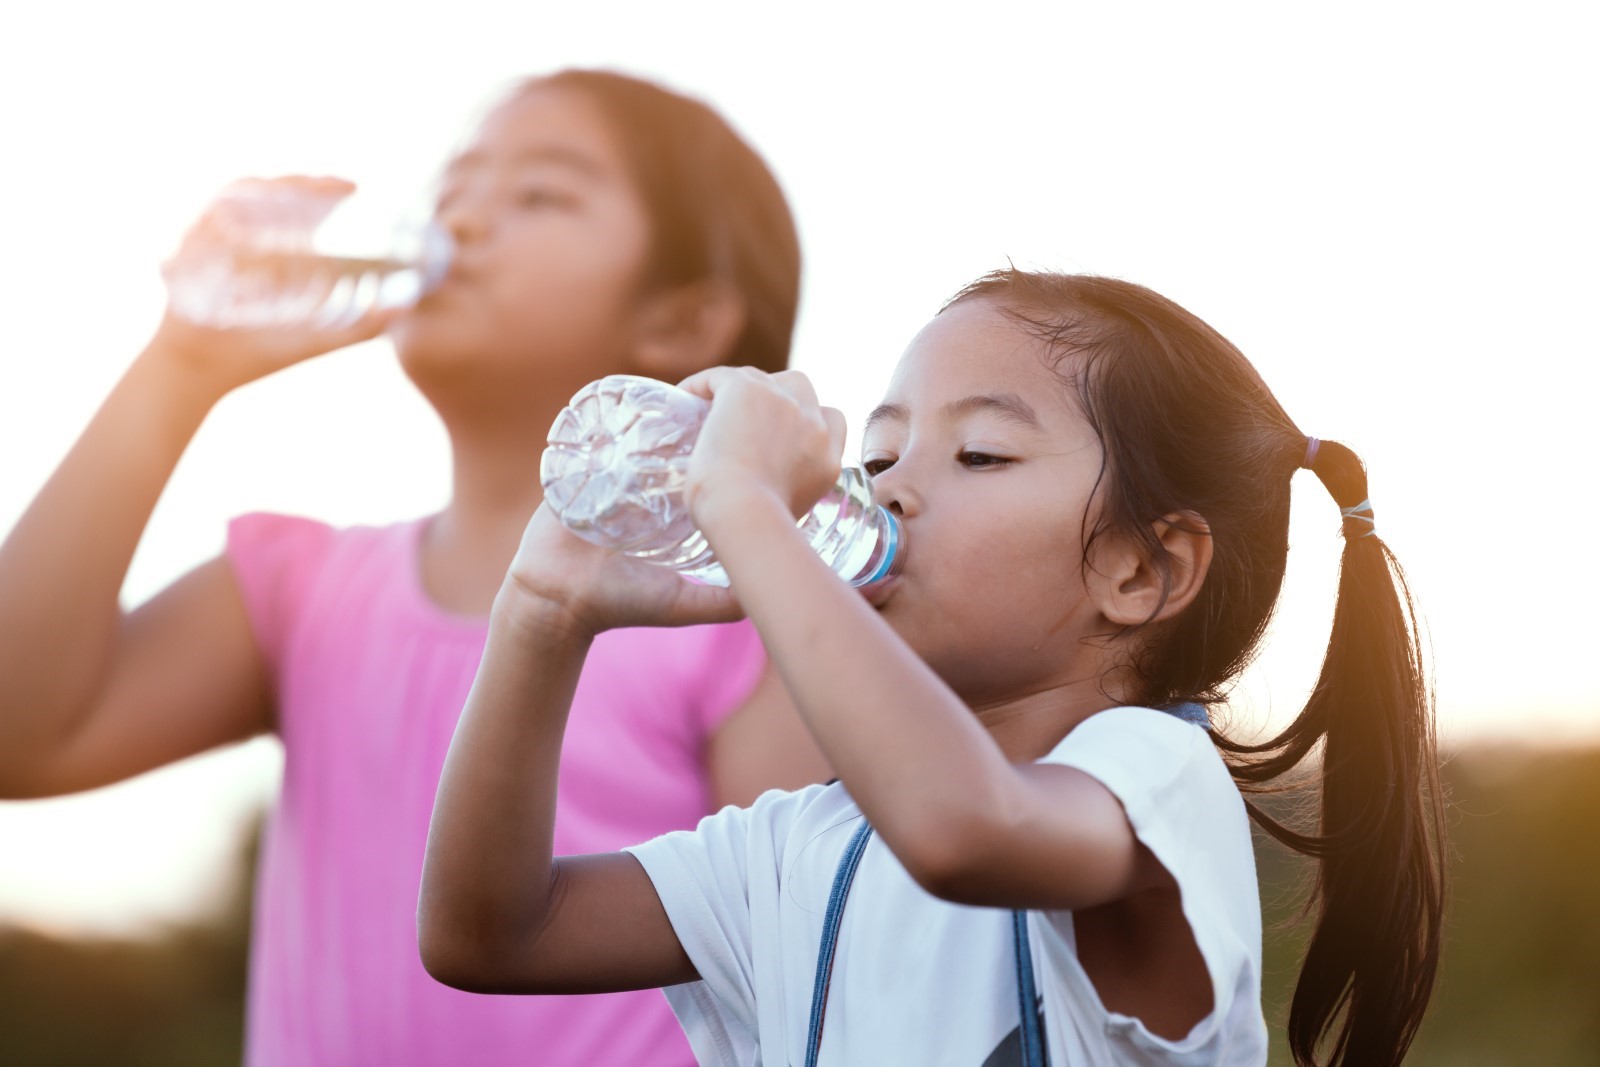 Children drinking water